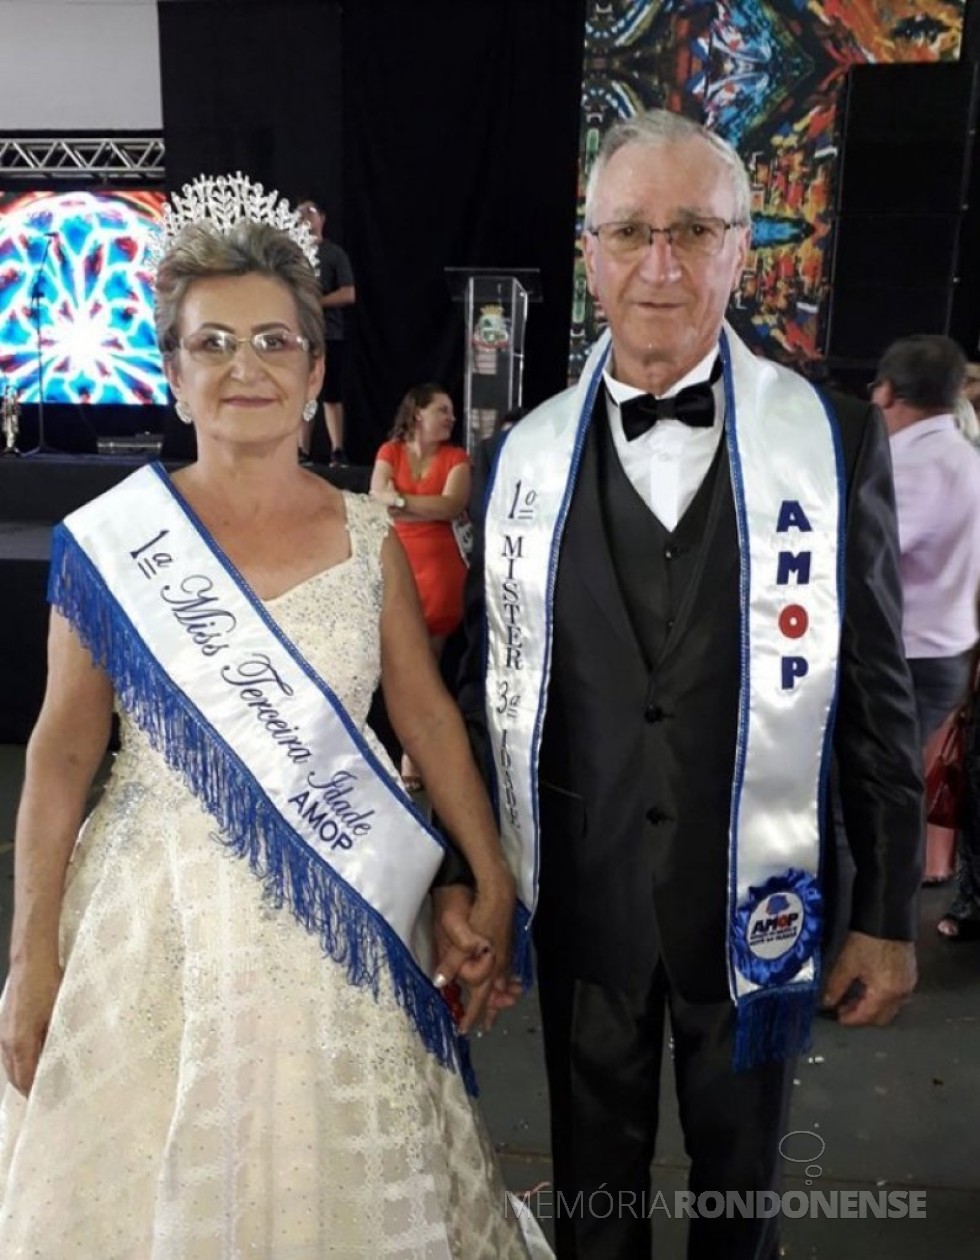 || Casal Maria Tavares e Ivo Bohrer, de Diamante do Oeste, eleitos Miss e Mister AMOP, em final de outubro de 2019.
Imagem: Acervo Projeto Memória Rondonense - FOTO 11 -